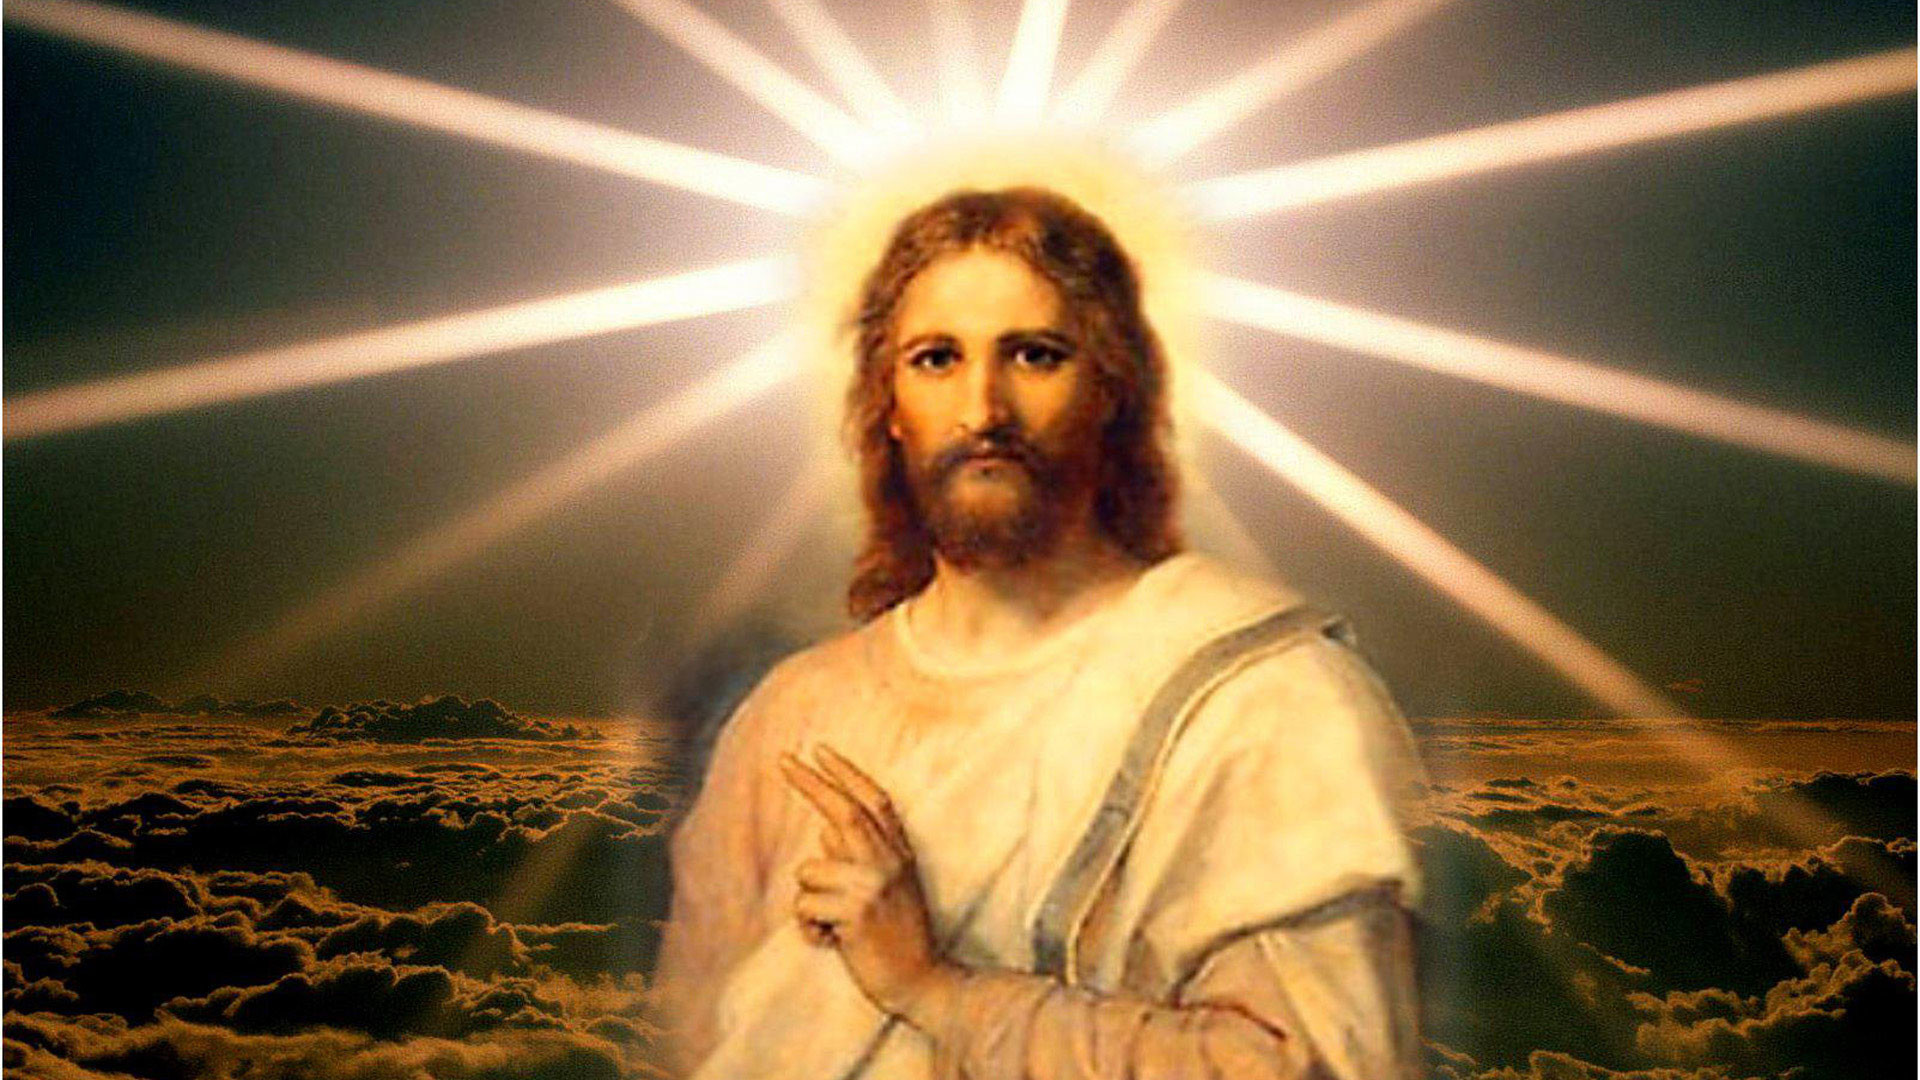 Free download Jesus Christ Desktop Backgrounds 56 images [1920x1080 ...